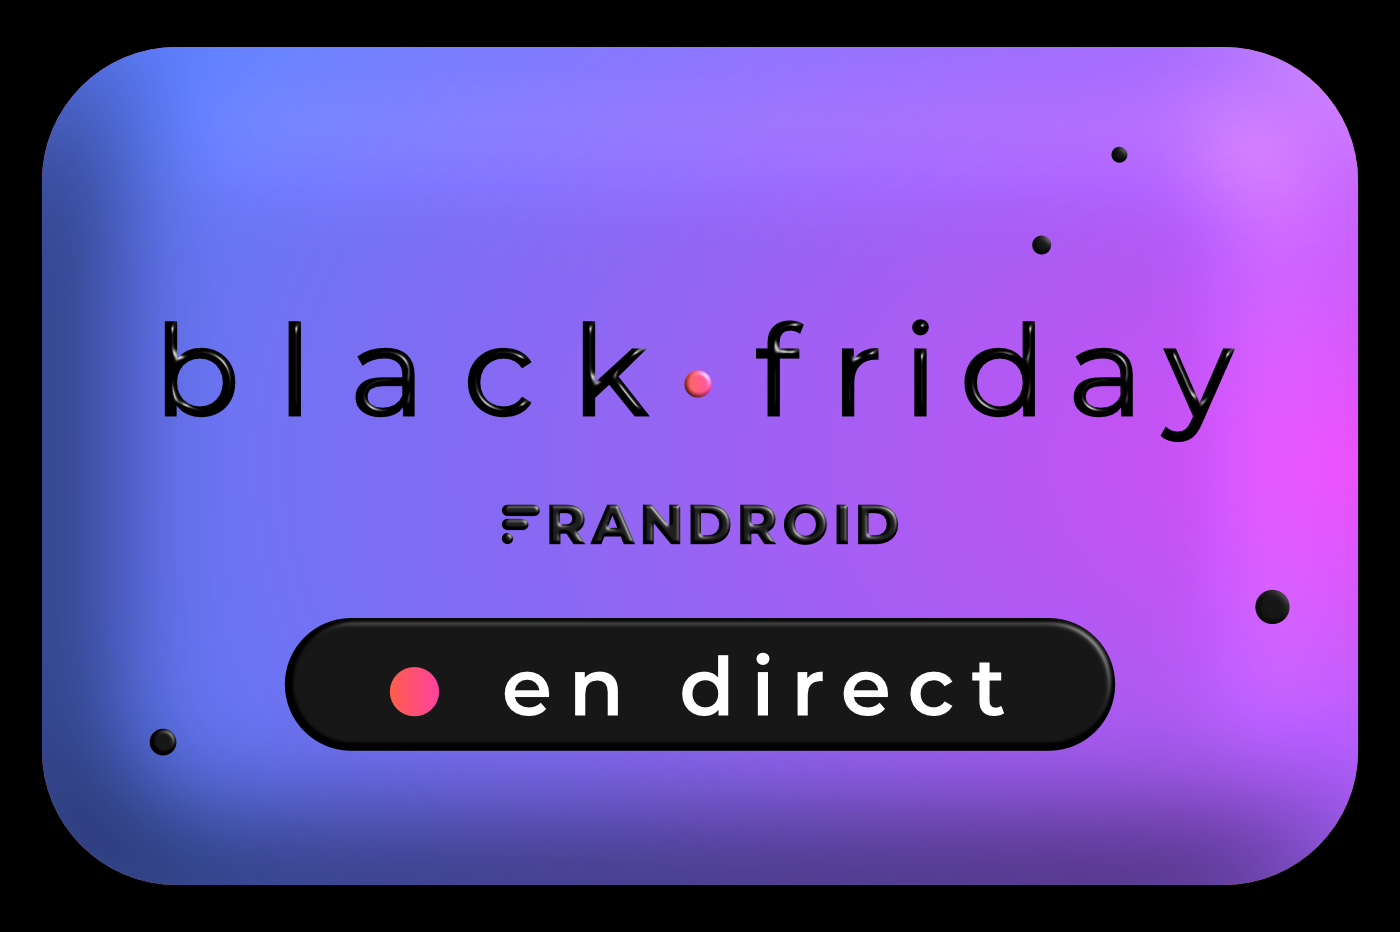 Black Friday dernier jour : les meilleures offres à saisir en direct avant qu’il ne soit trop tard - Frandroid